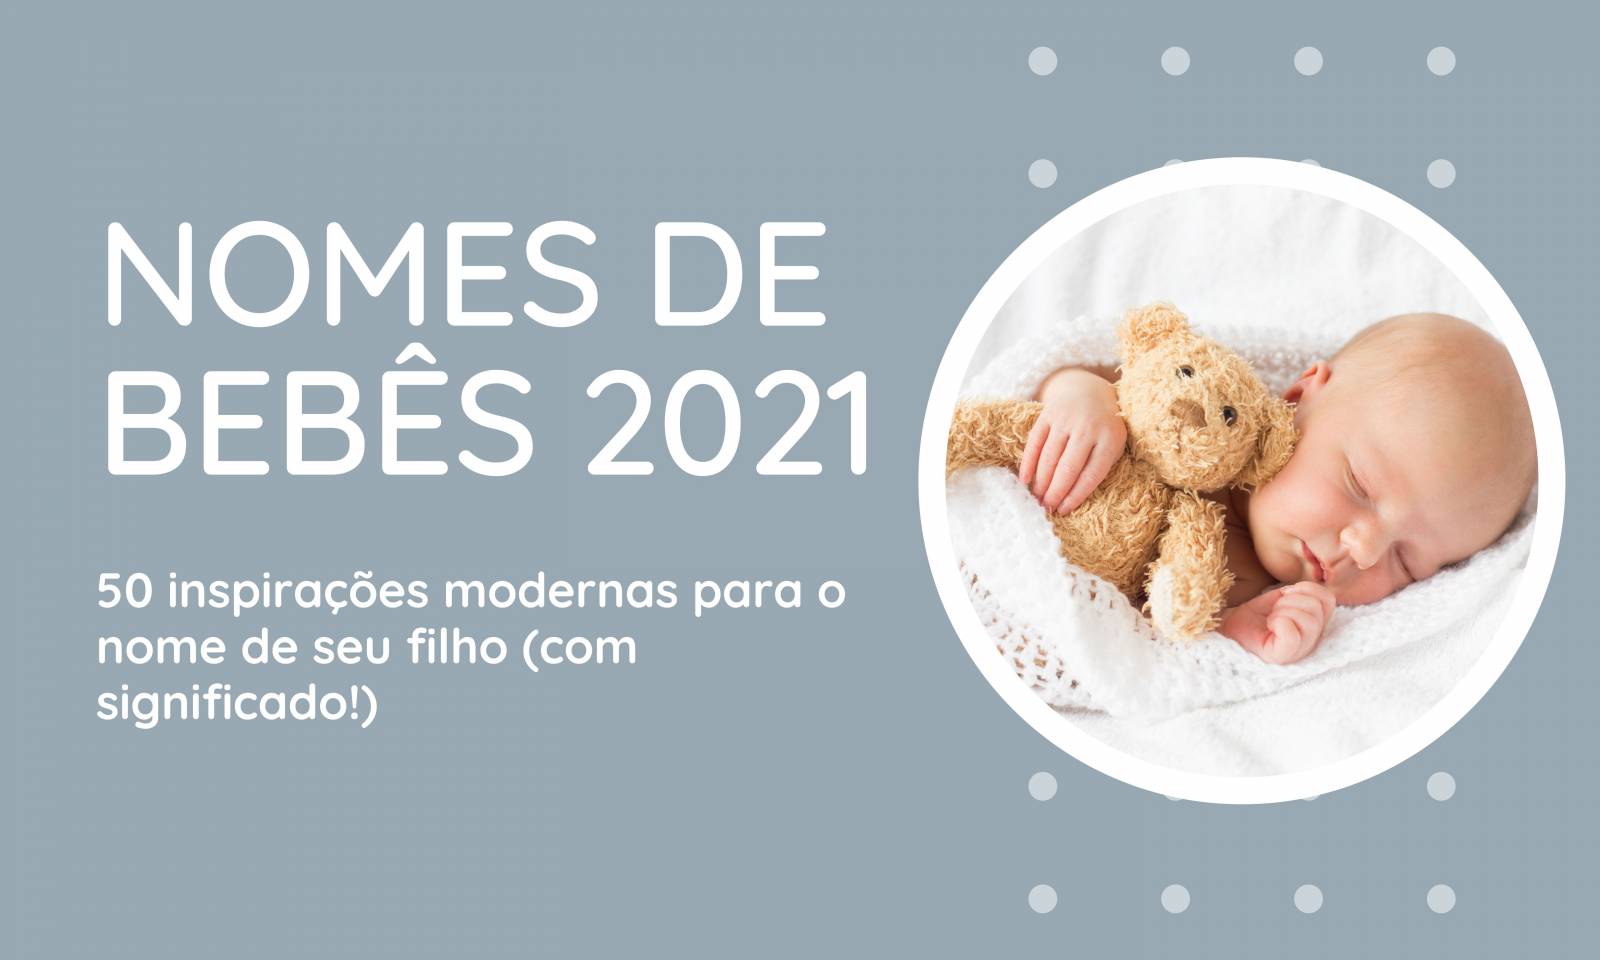 safinebaby.com.br nomes de bebes 2021 50 inspiracoes modernas para o nome de seu filho com significado nomes de bebes 2021